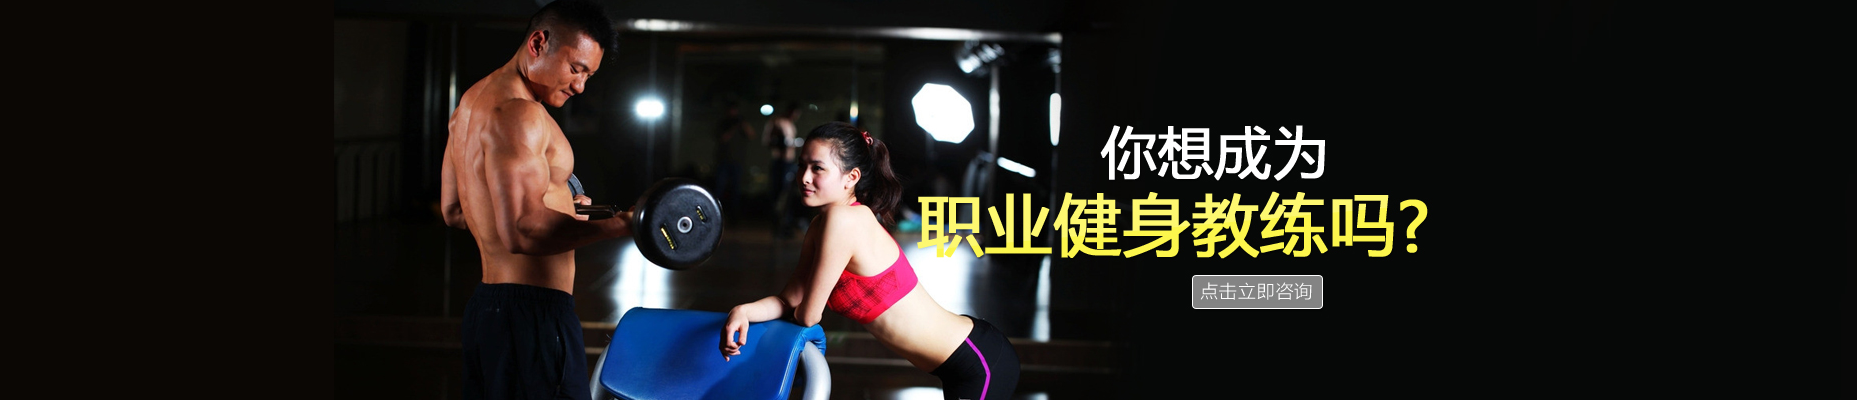 北京健身学院 横幅广告